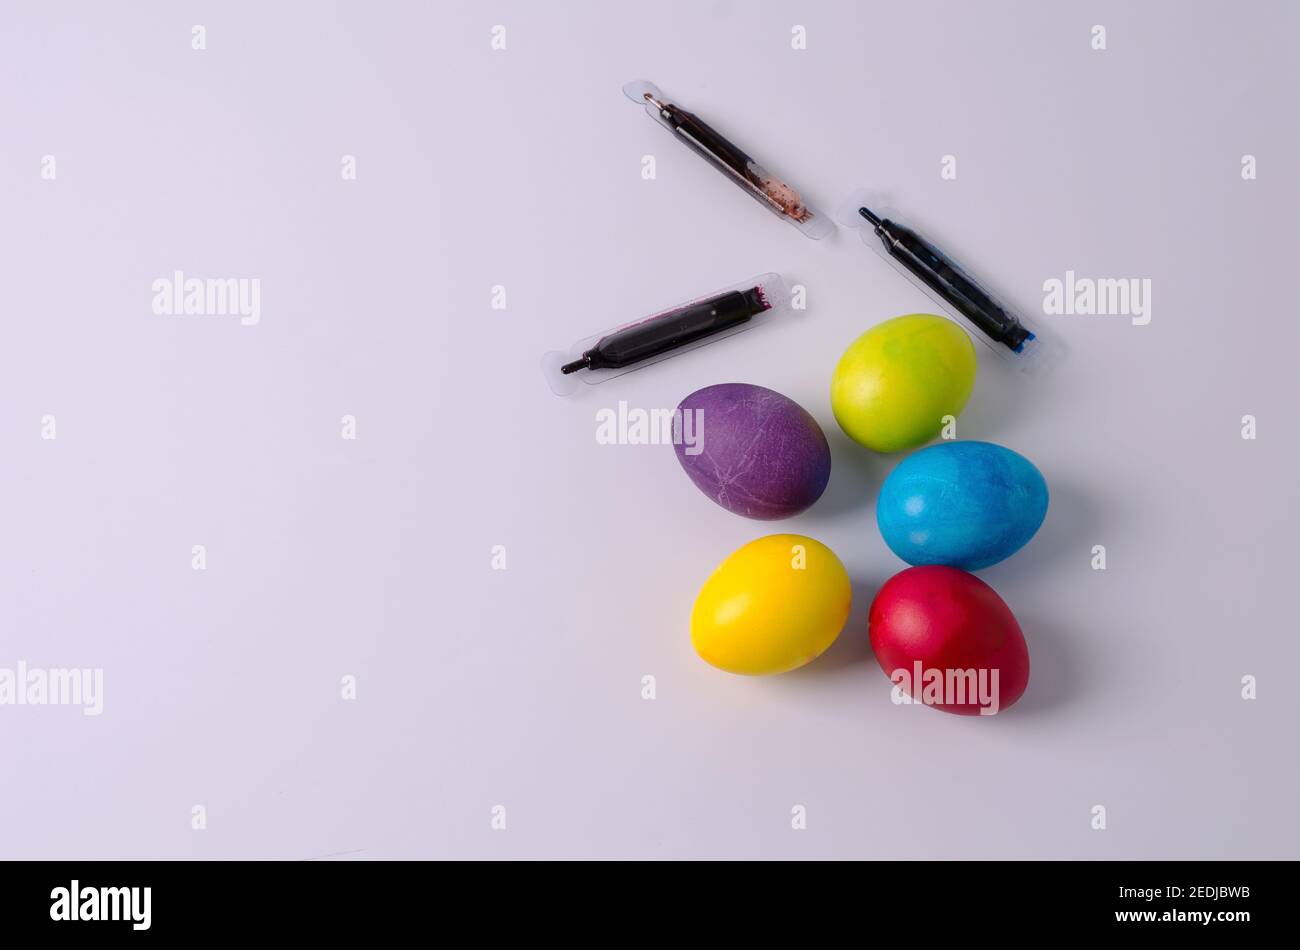 Arrière-plan de Pâques. Les œufs de poulet peints en jaune, vert, bleu, rouge et violet se trouvent sur un fond clair. Étape 5 Banque D'Images